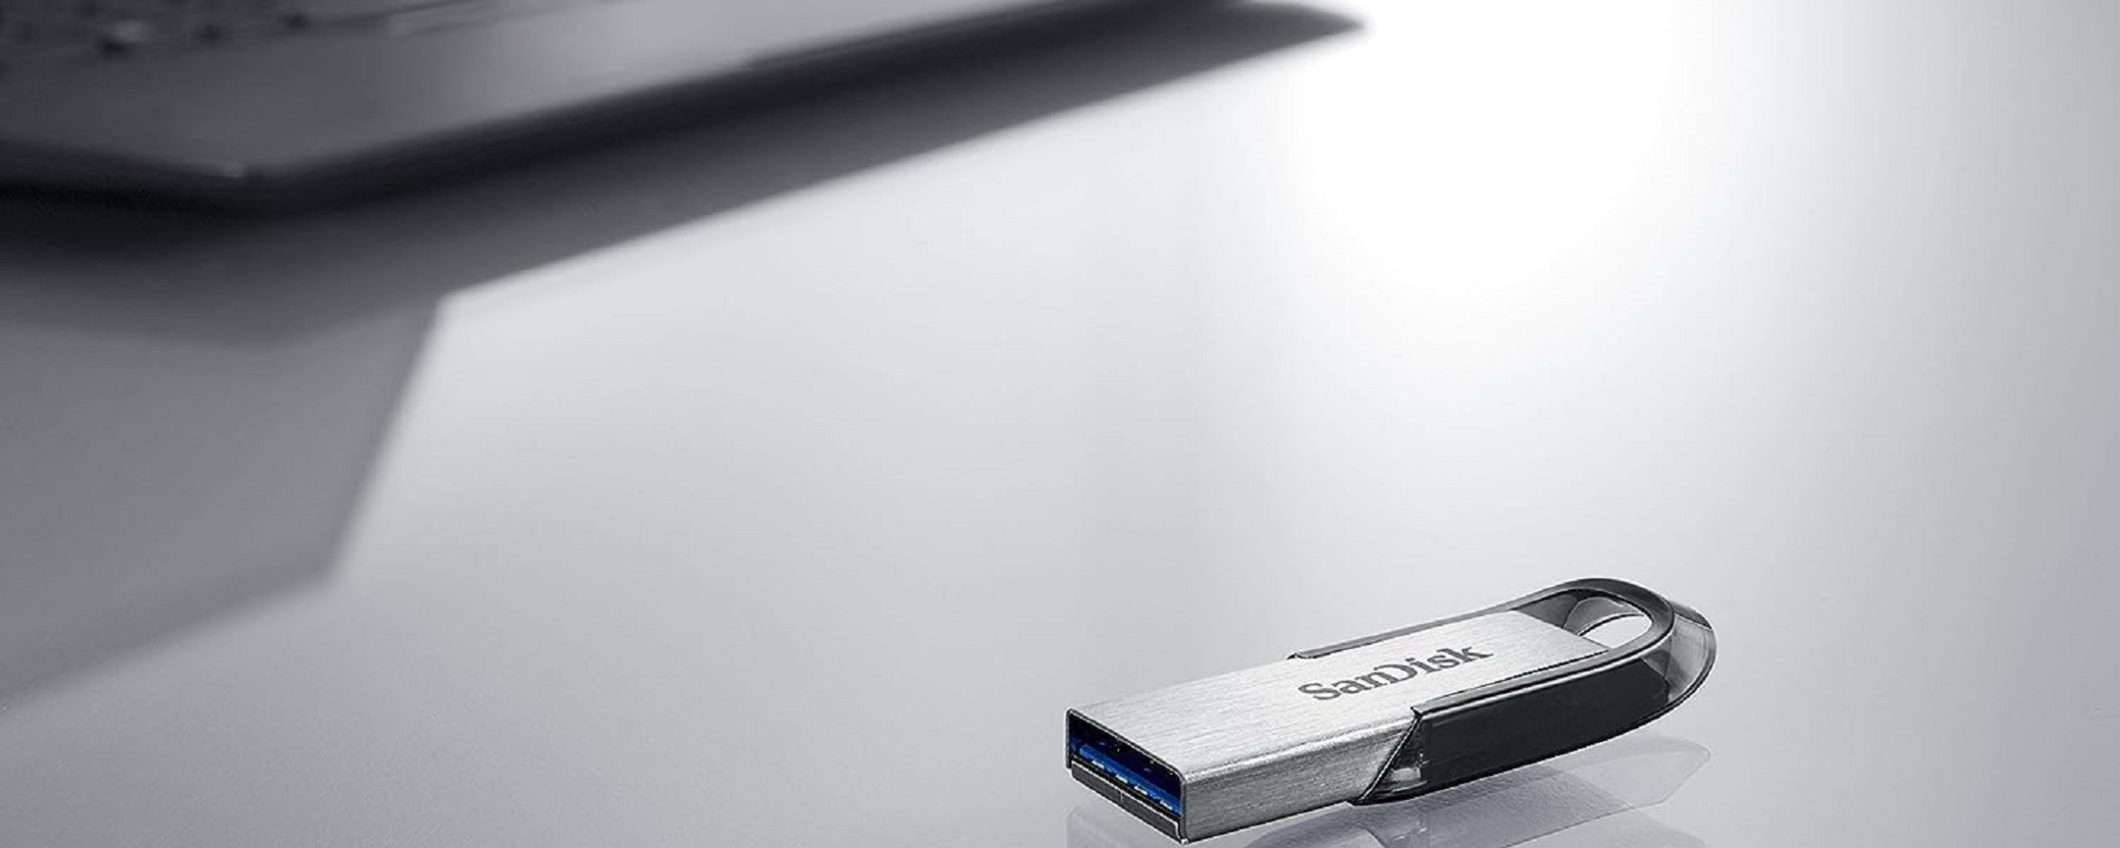 Sandisk Ultra Luxe USB 3.0 da 256GB scontata del 50%: FOLLIA di Amazon